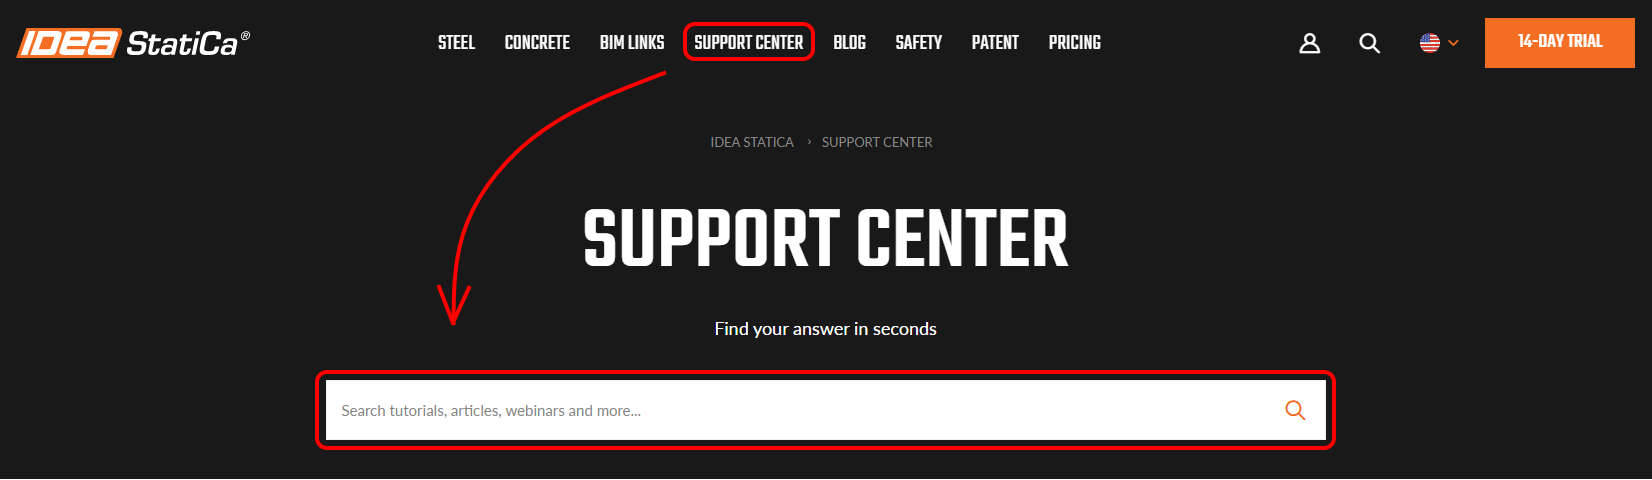 IDEA StatiCa - Support center